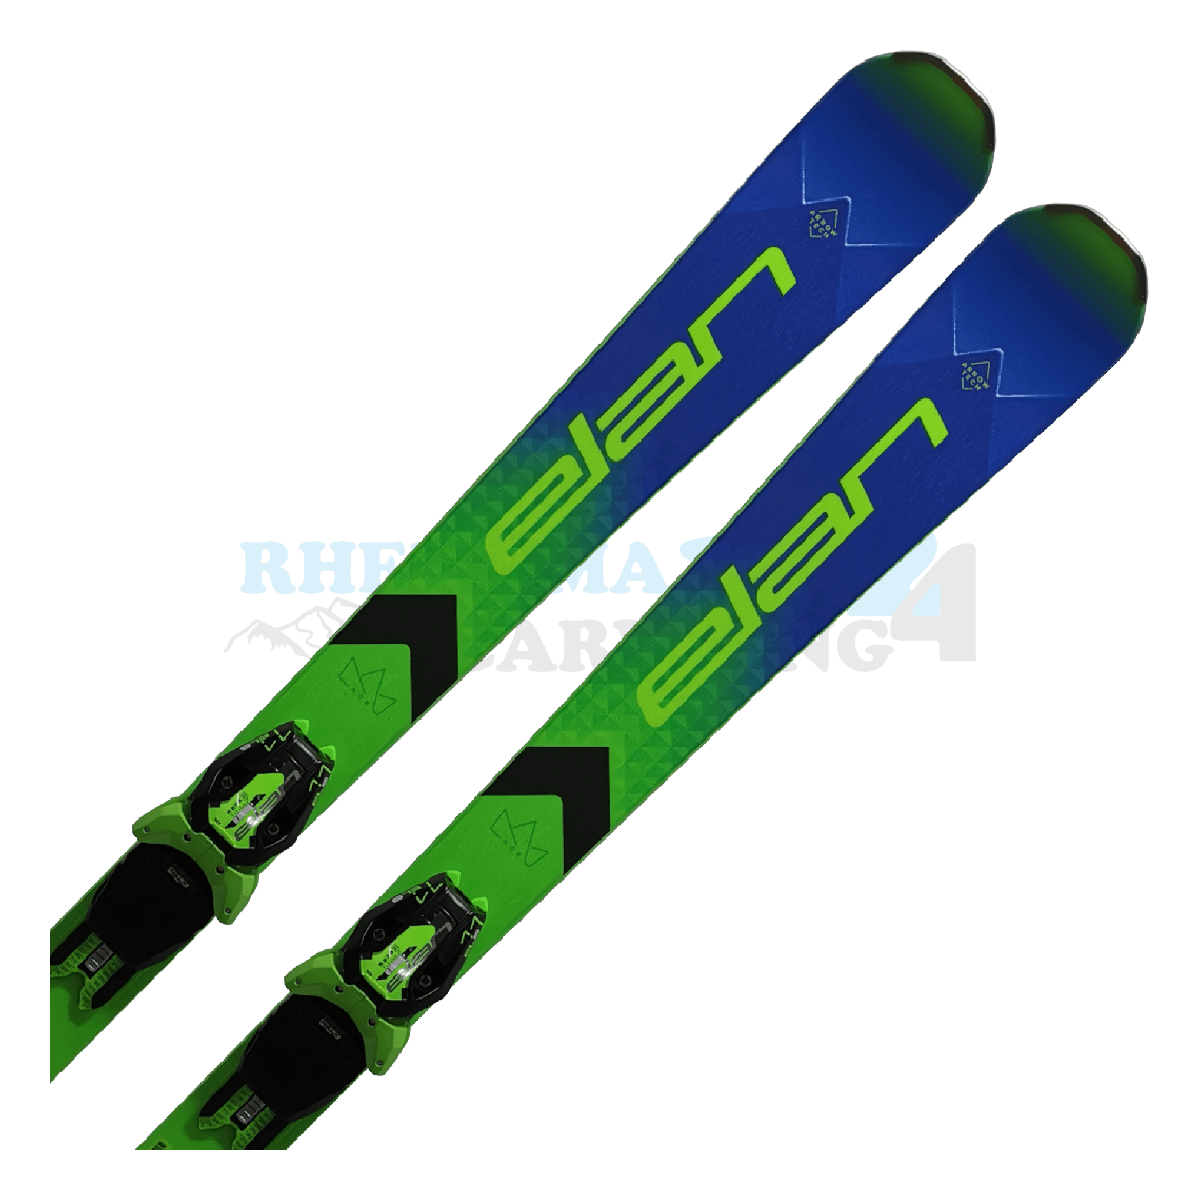 Elan ACE SLX Pro PowerShift aus dem Jahre 2023/24 in der Farbe Blau-Grün, Ansicht des oberen Teils des Skis